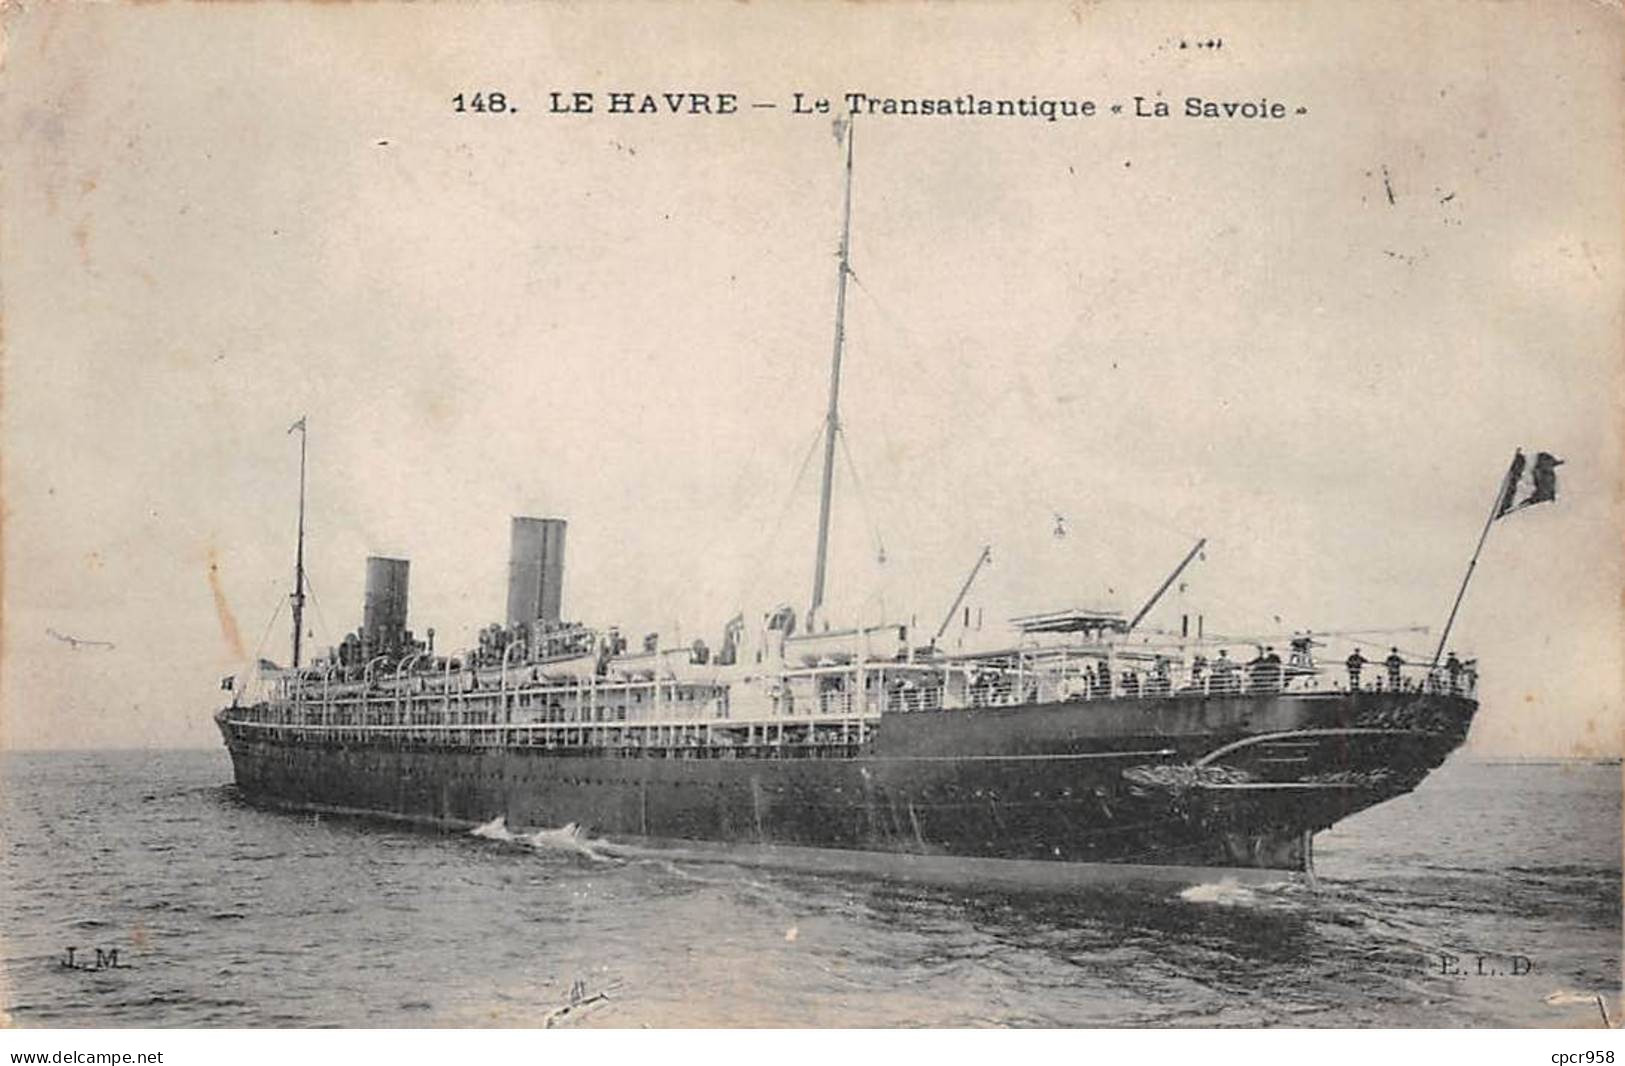 BATEAUX - SAN50963 - Le Havre - Le Transatlantique "La Savoie" - Paquebote